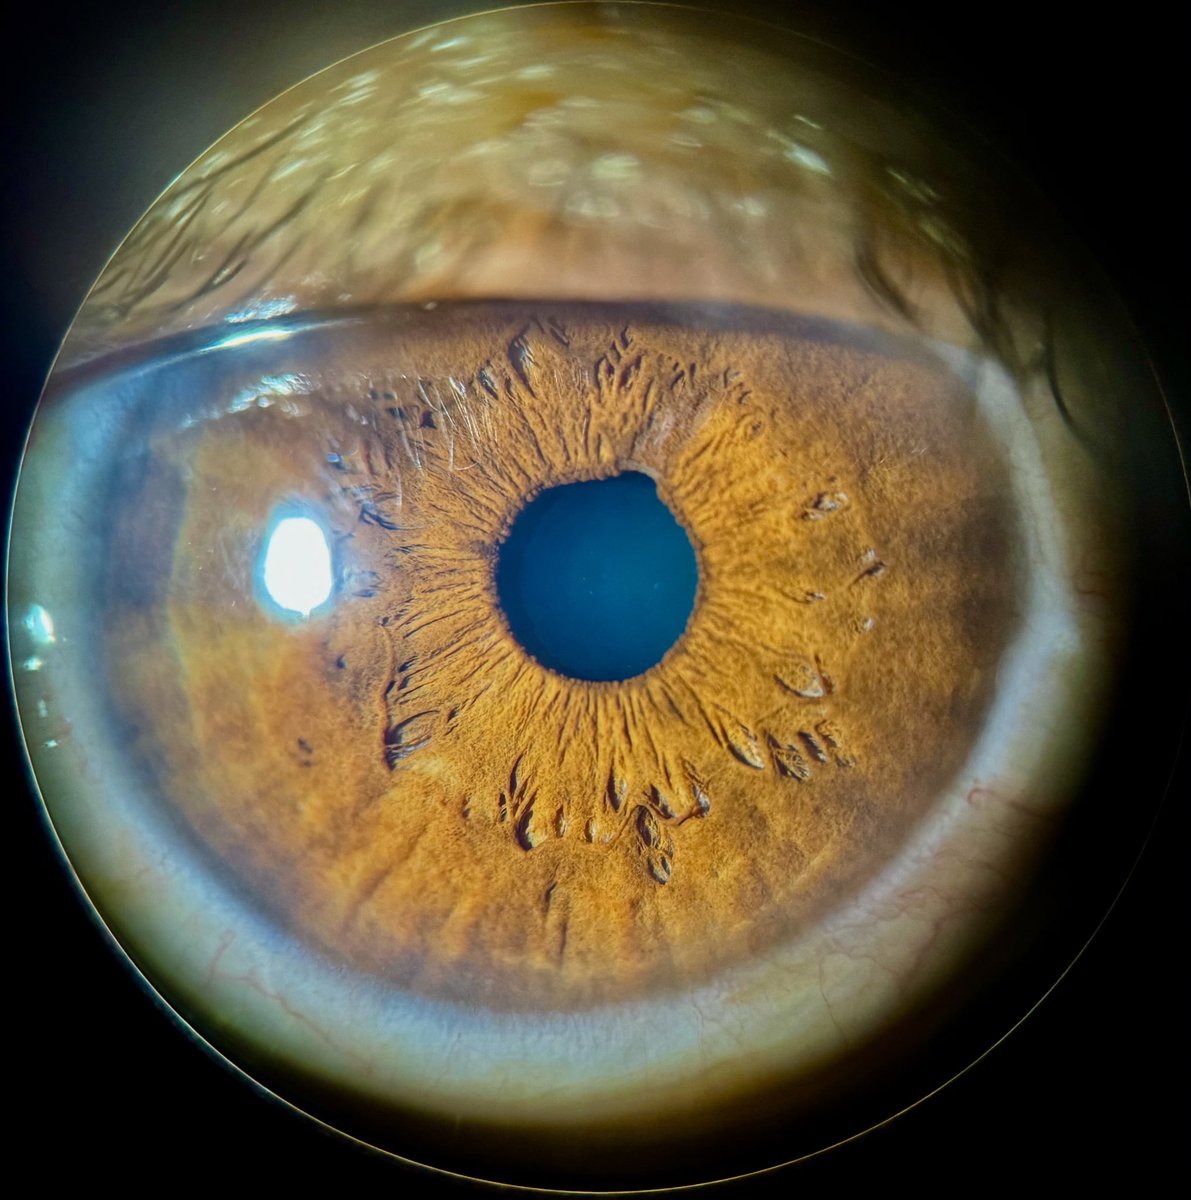 Dos bombas a punto de estallar en estos ojitos 💣 💣 👁️ #Ophthalmology #eyecare